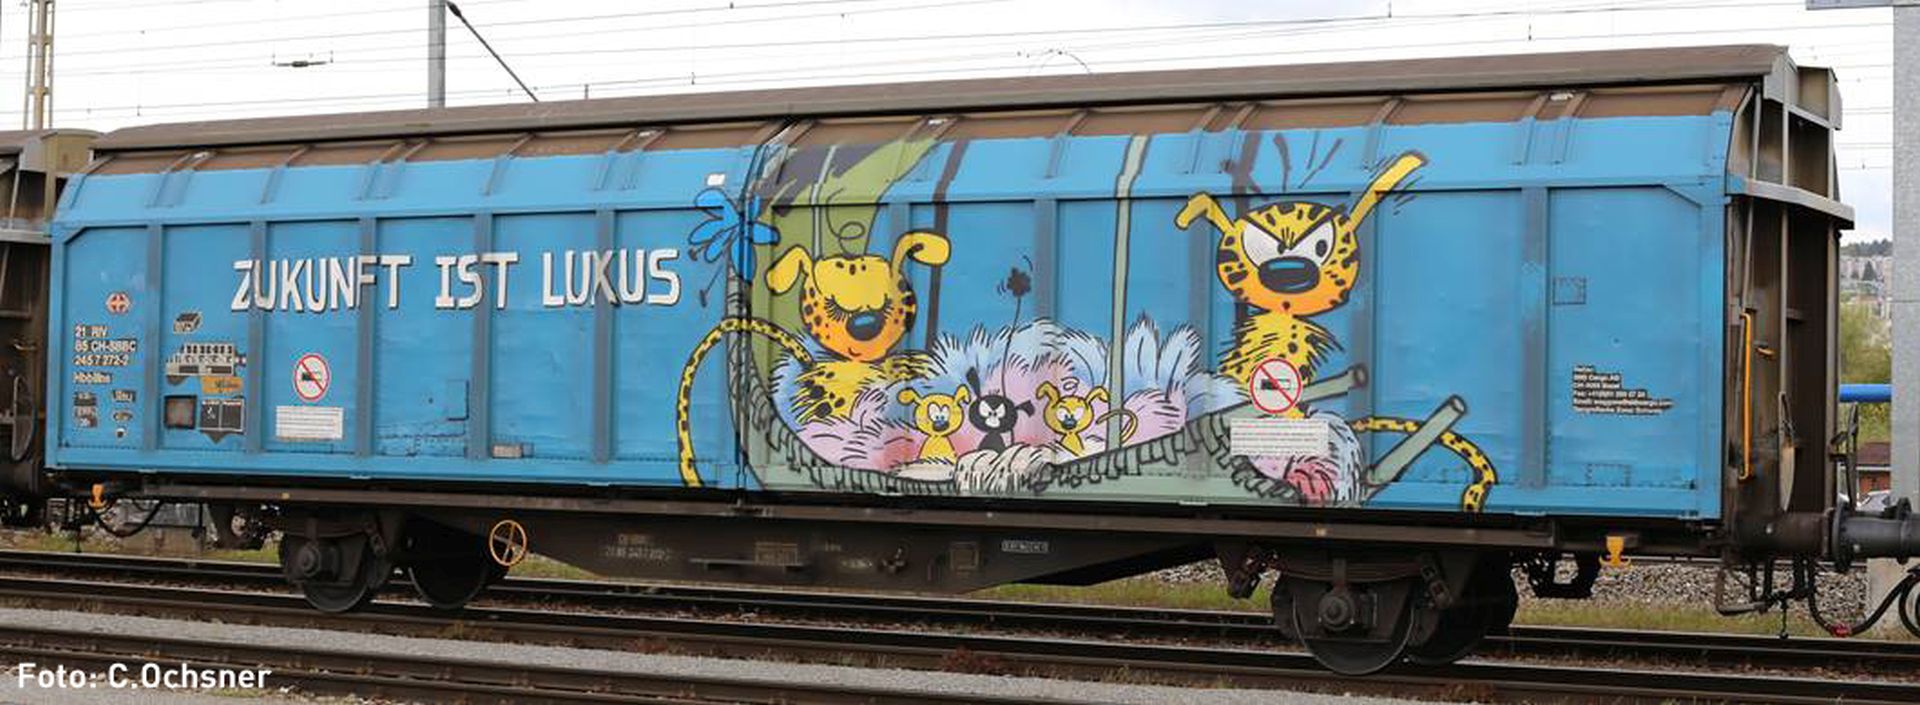 Hobbytrain H24666 - Schiebewandwagen Hbbillns, SBB, Ep.VI, Graffiti 'Zukunft ist Luxus'